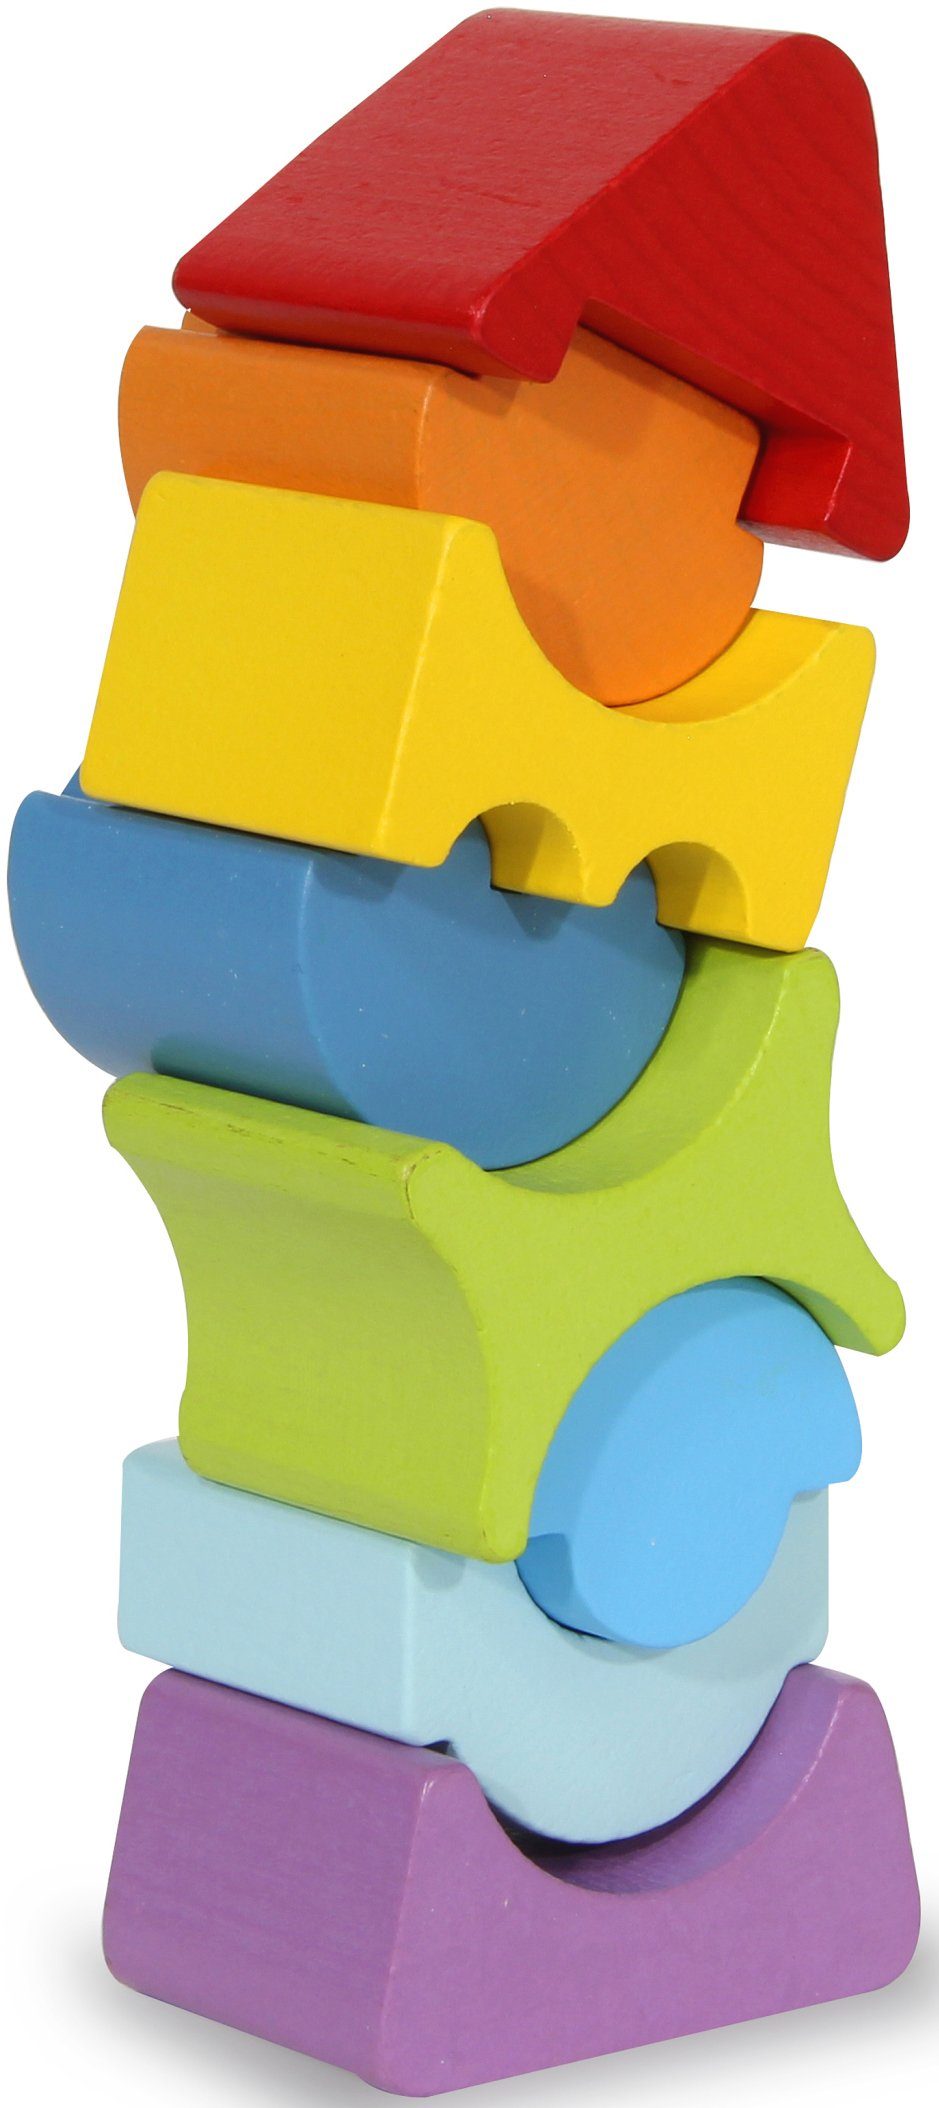 Jamara Stapelspielzeug Holzspielzeug, Kidiwood, Stapelturm, Holz aus